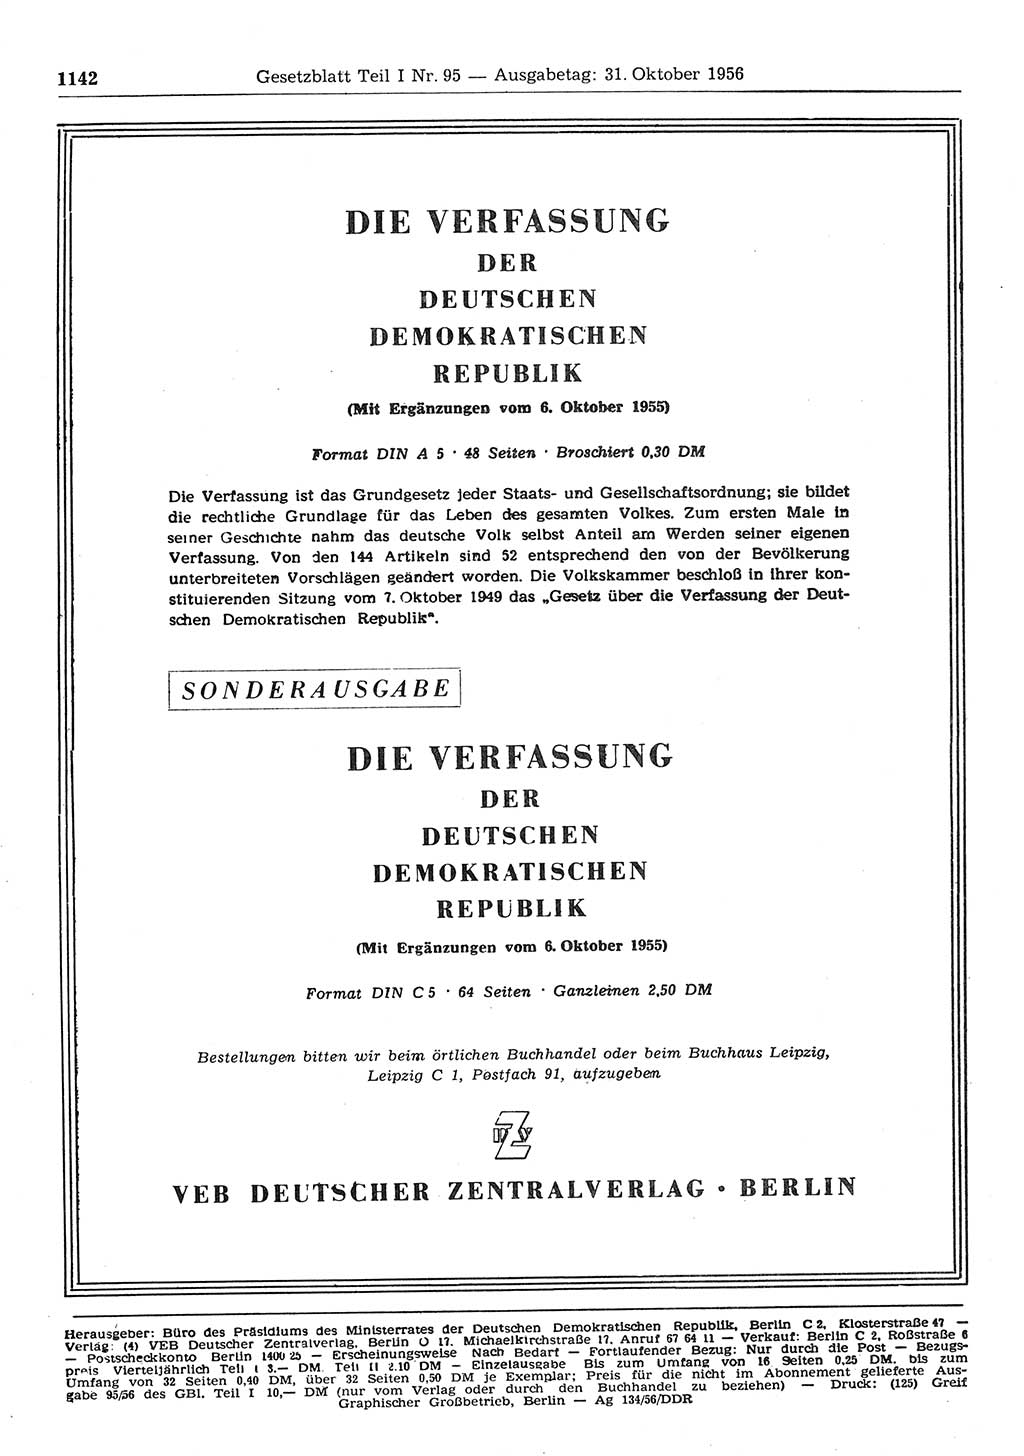 Gesetzblatt (GBl.) der Deutschen Demokratischen Republik (DDR) Teil Ⅰ 1956, Seite 1142 (GBl. DDR Ⅰ 1956, S. 1142)